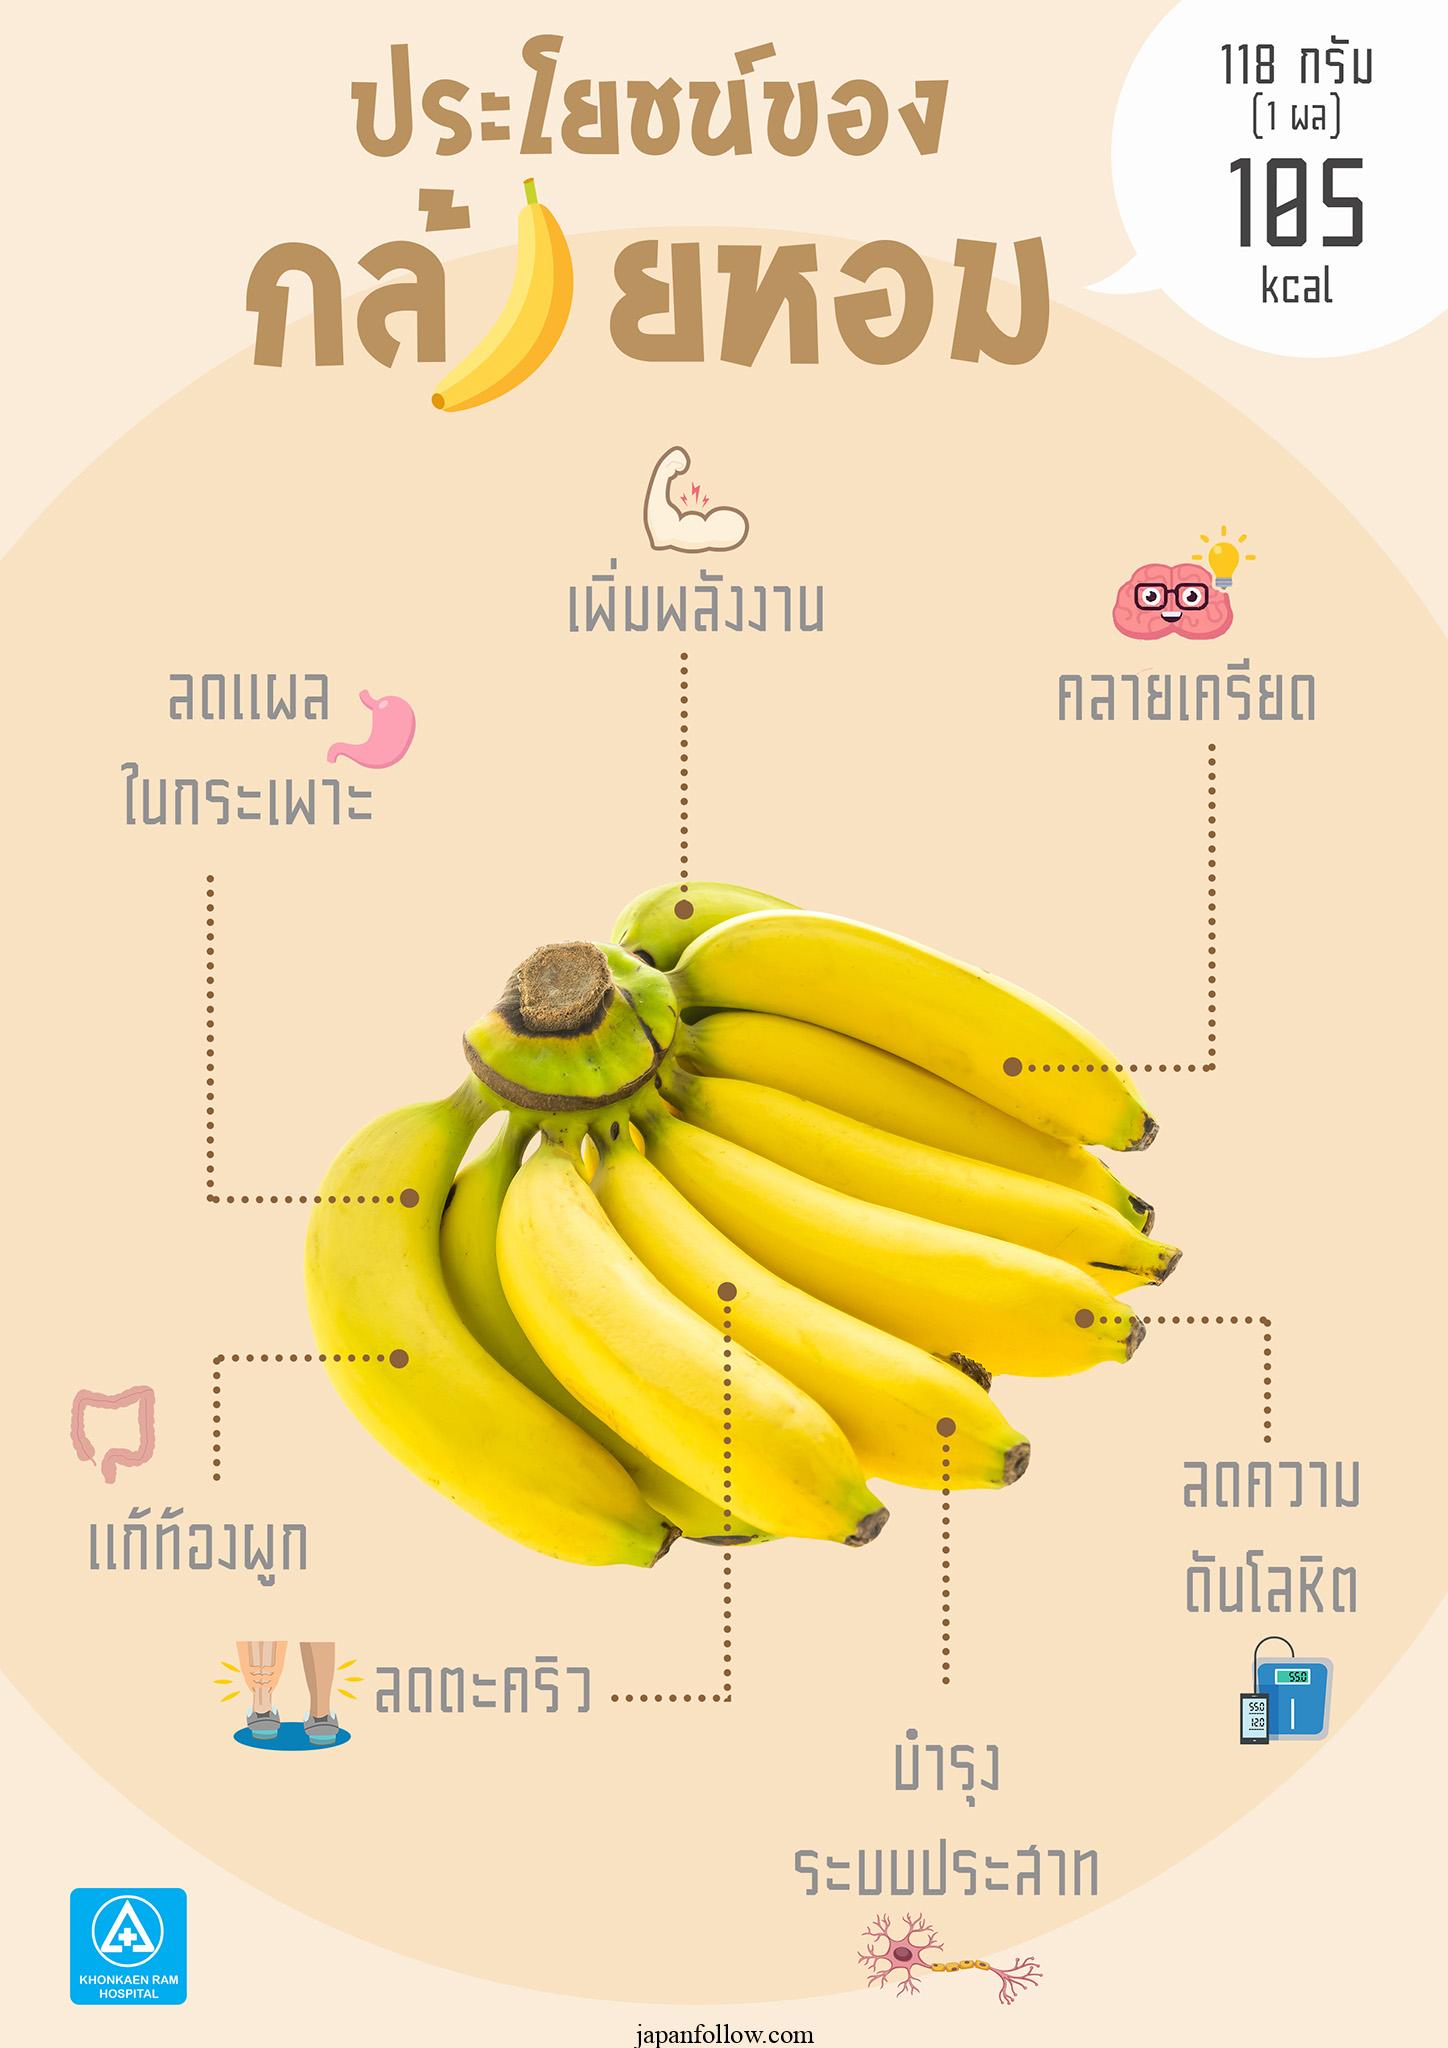 바나나의 이점